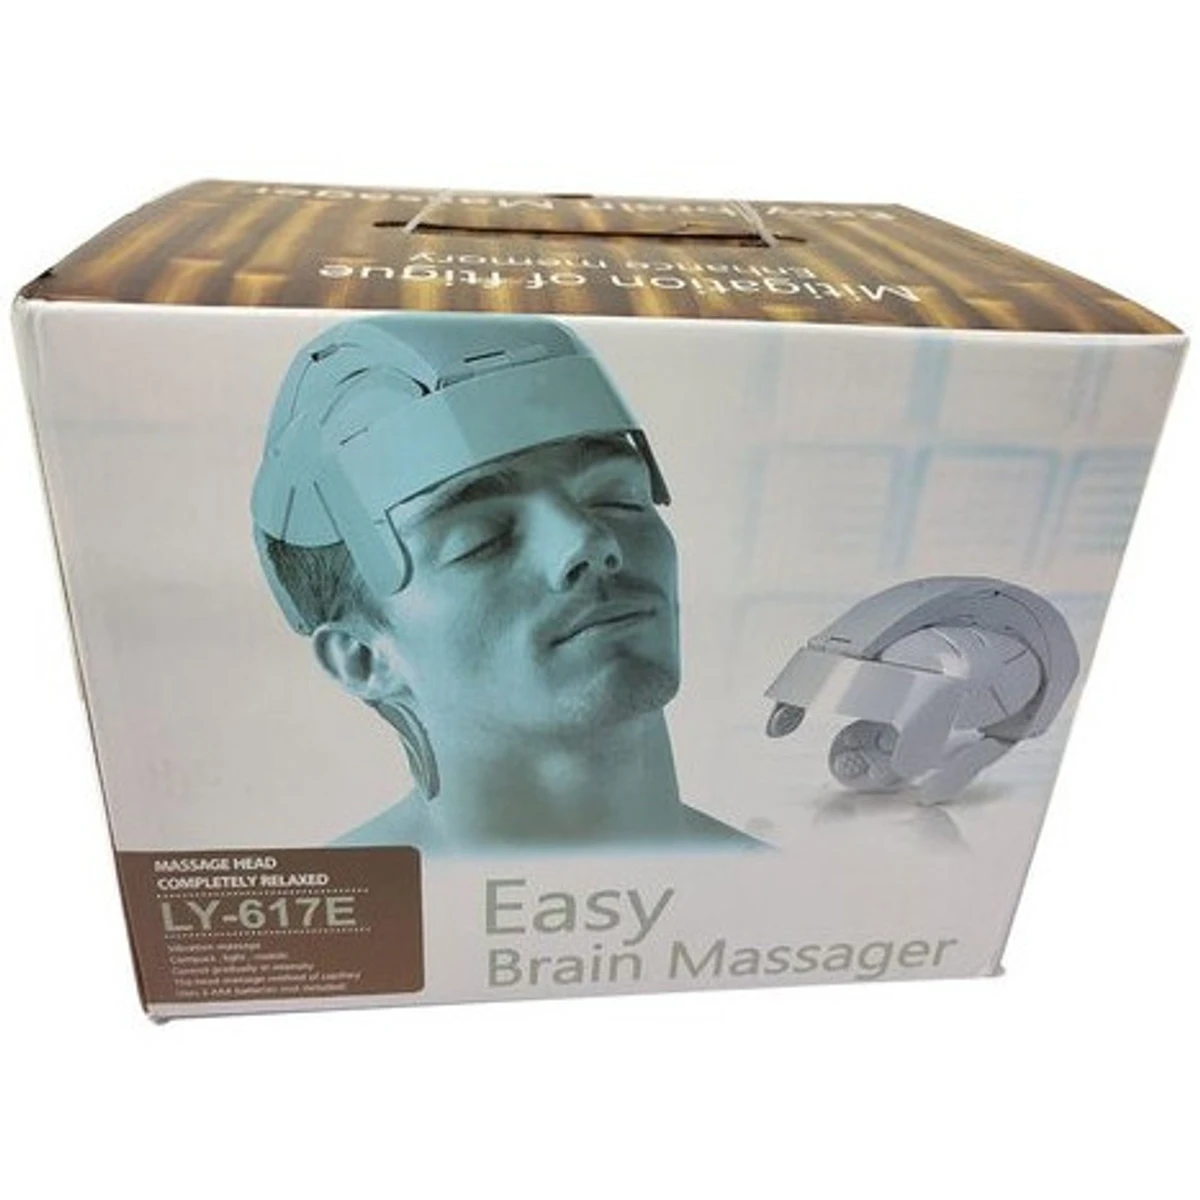 Easy Brain Massager